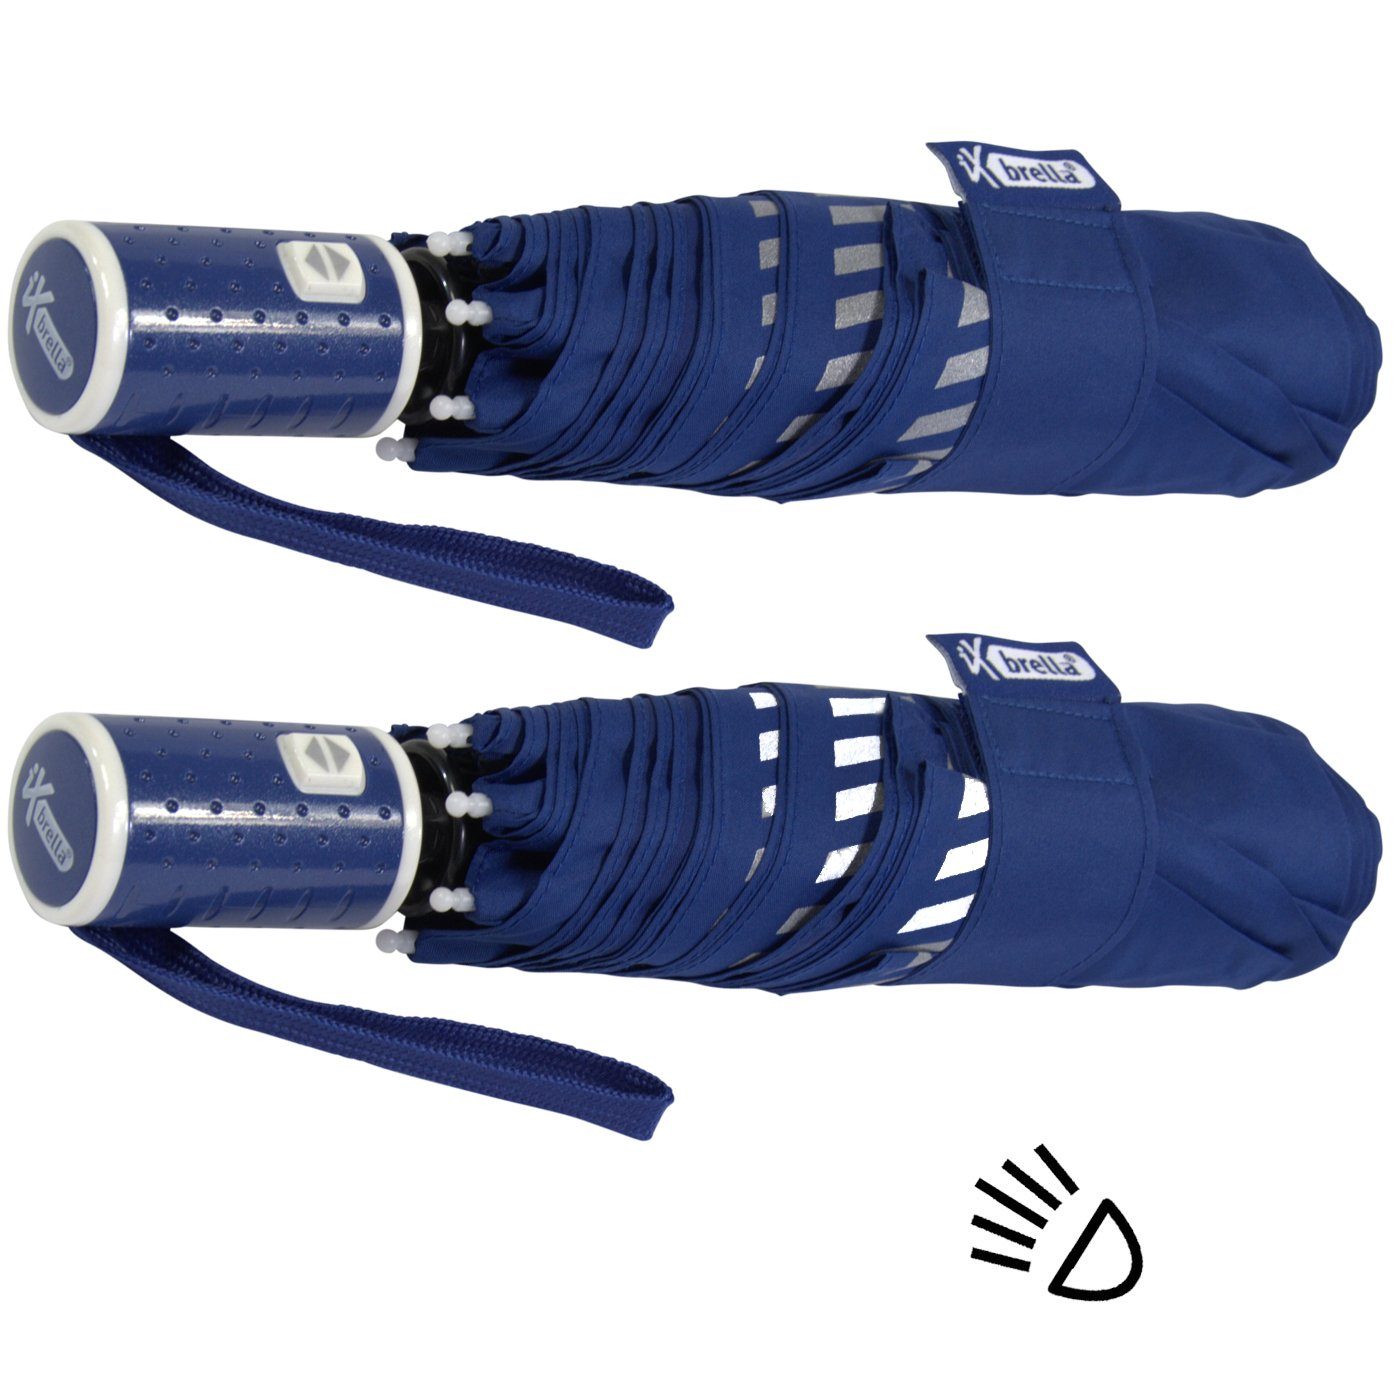 blau reflektierend, mit Taschenregenschirm Kinderschirm durch Sicherheit Auf-Zu-Automatik, Reflex-Streifen - iX-brella